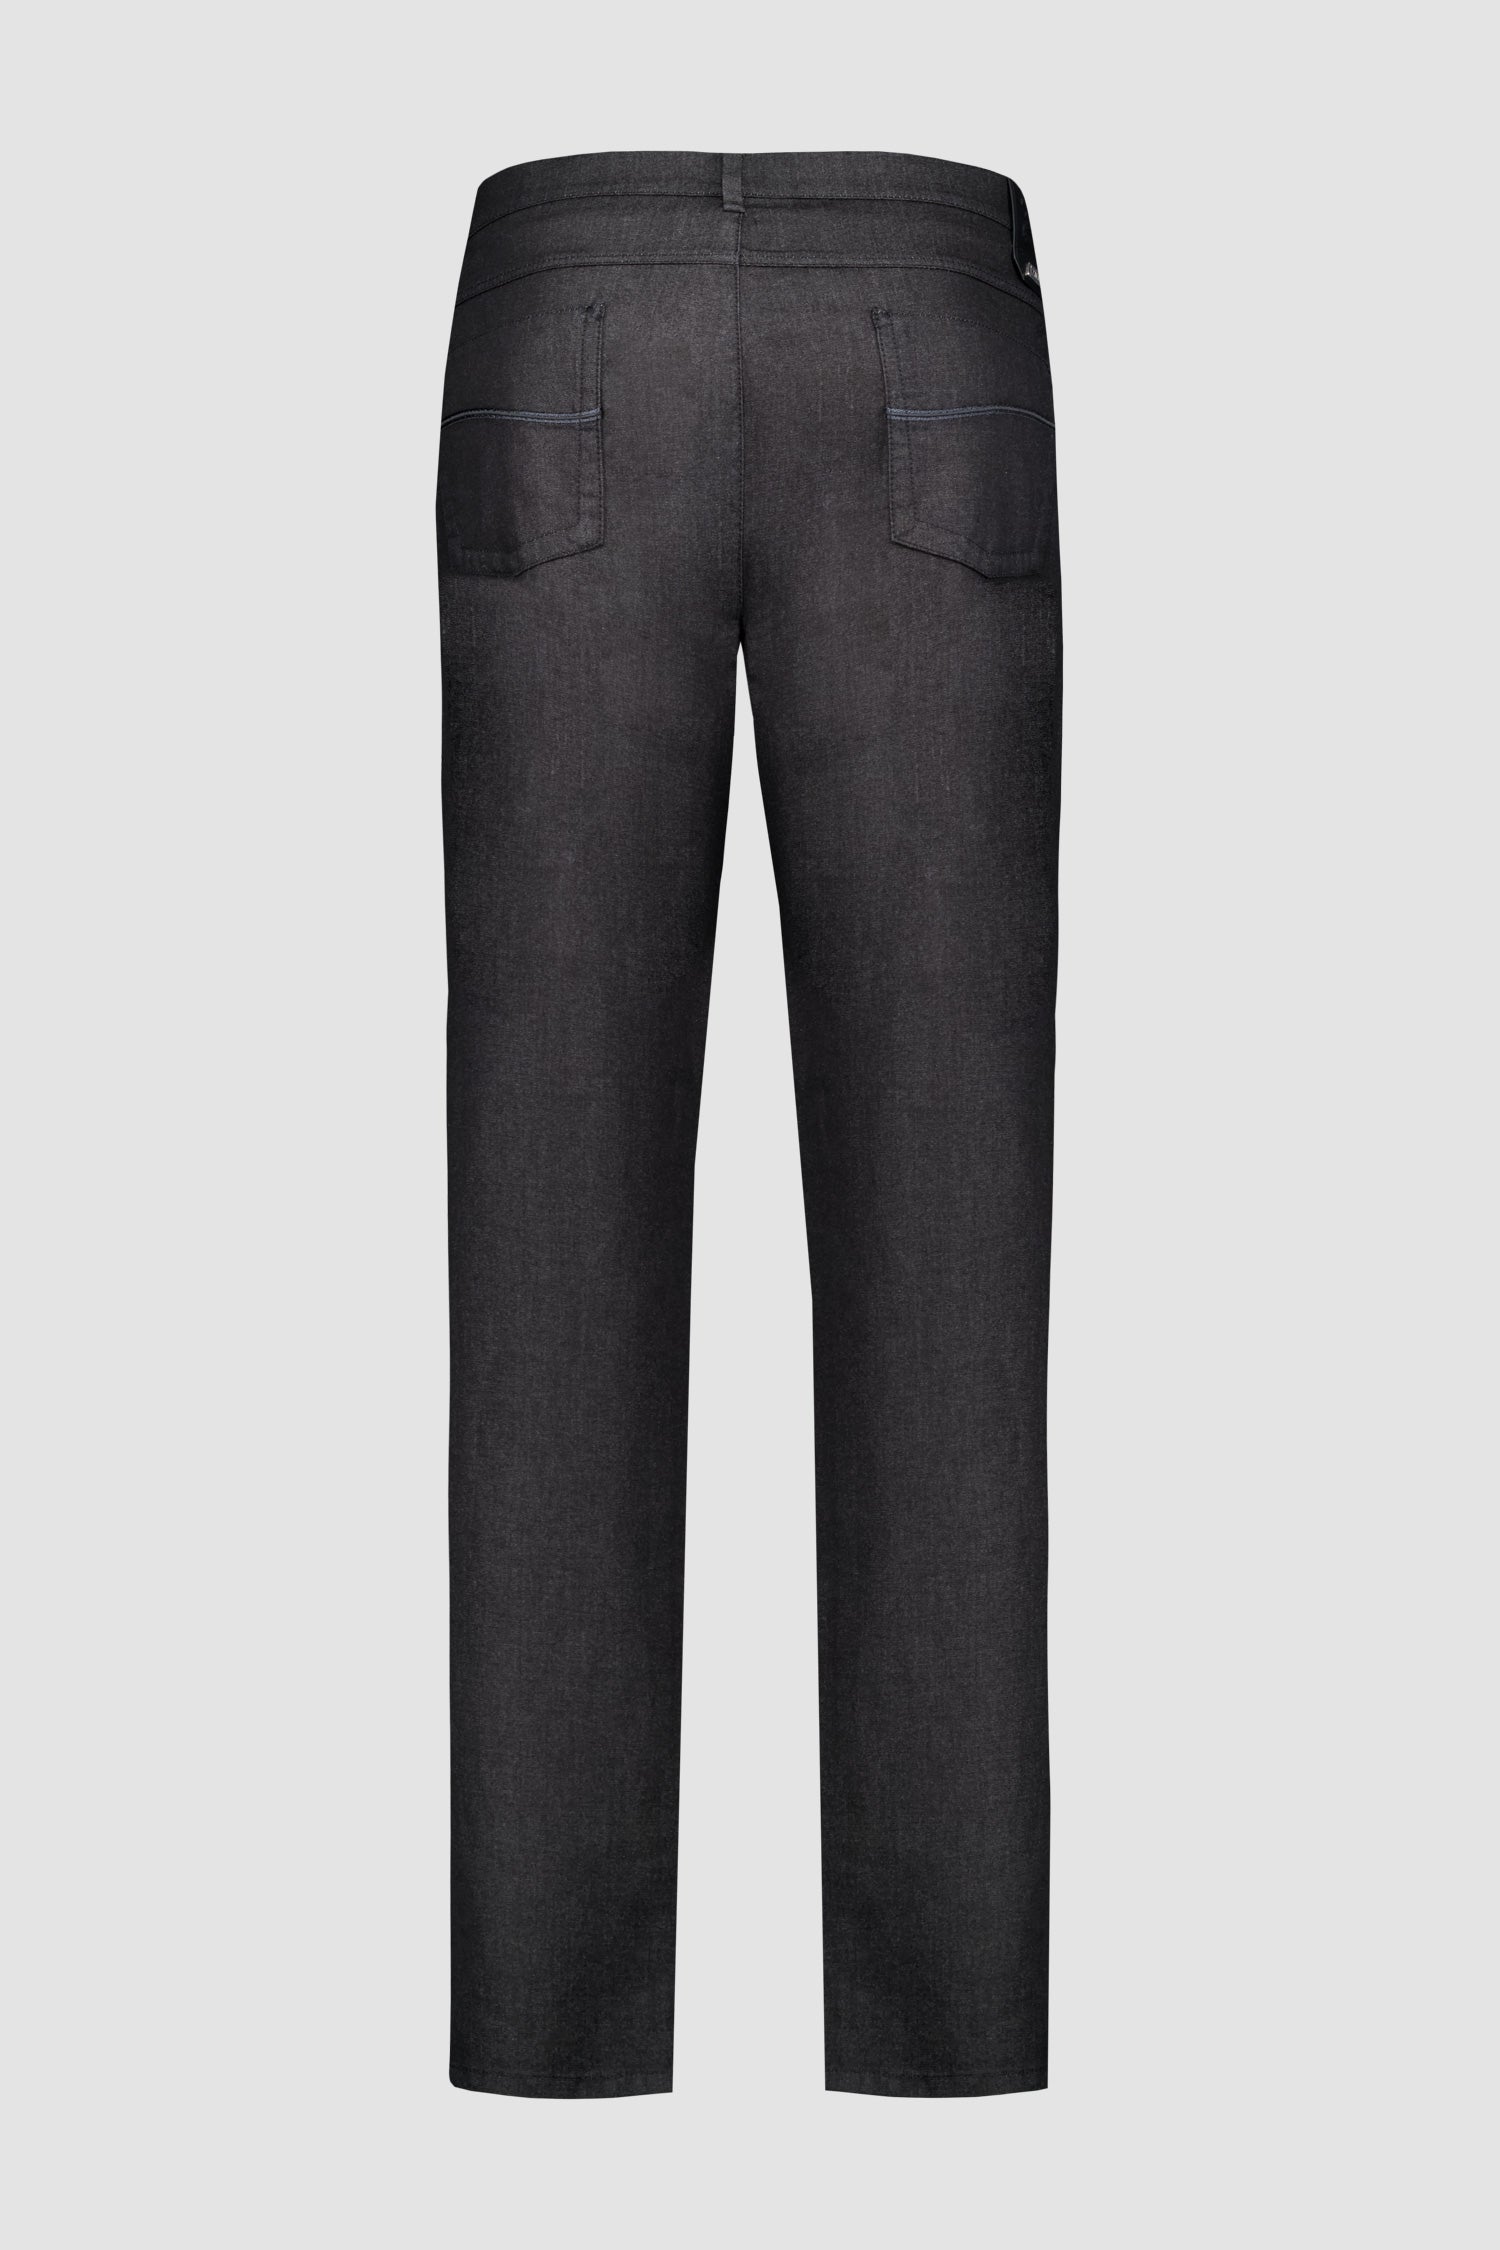 Zilli Black Slim Fit Denim Ultralight Griffon Vertica Jeans